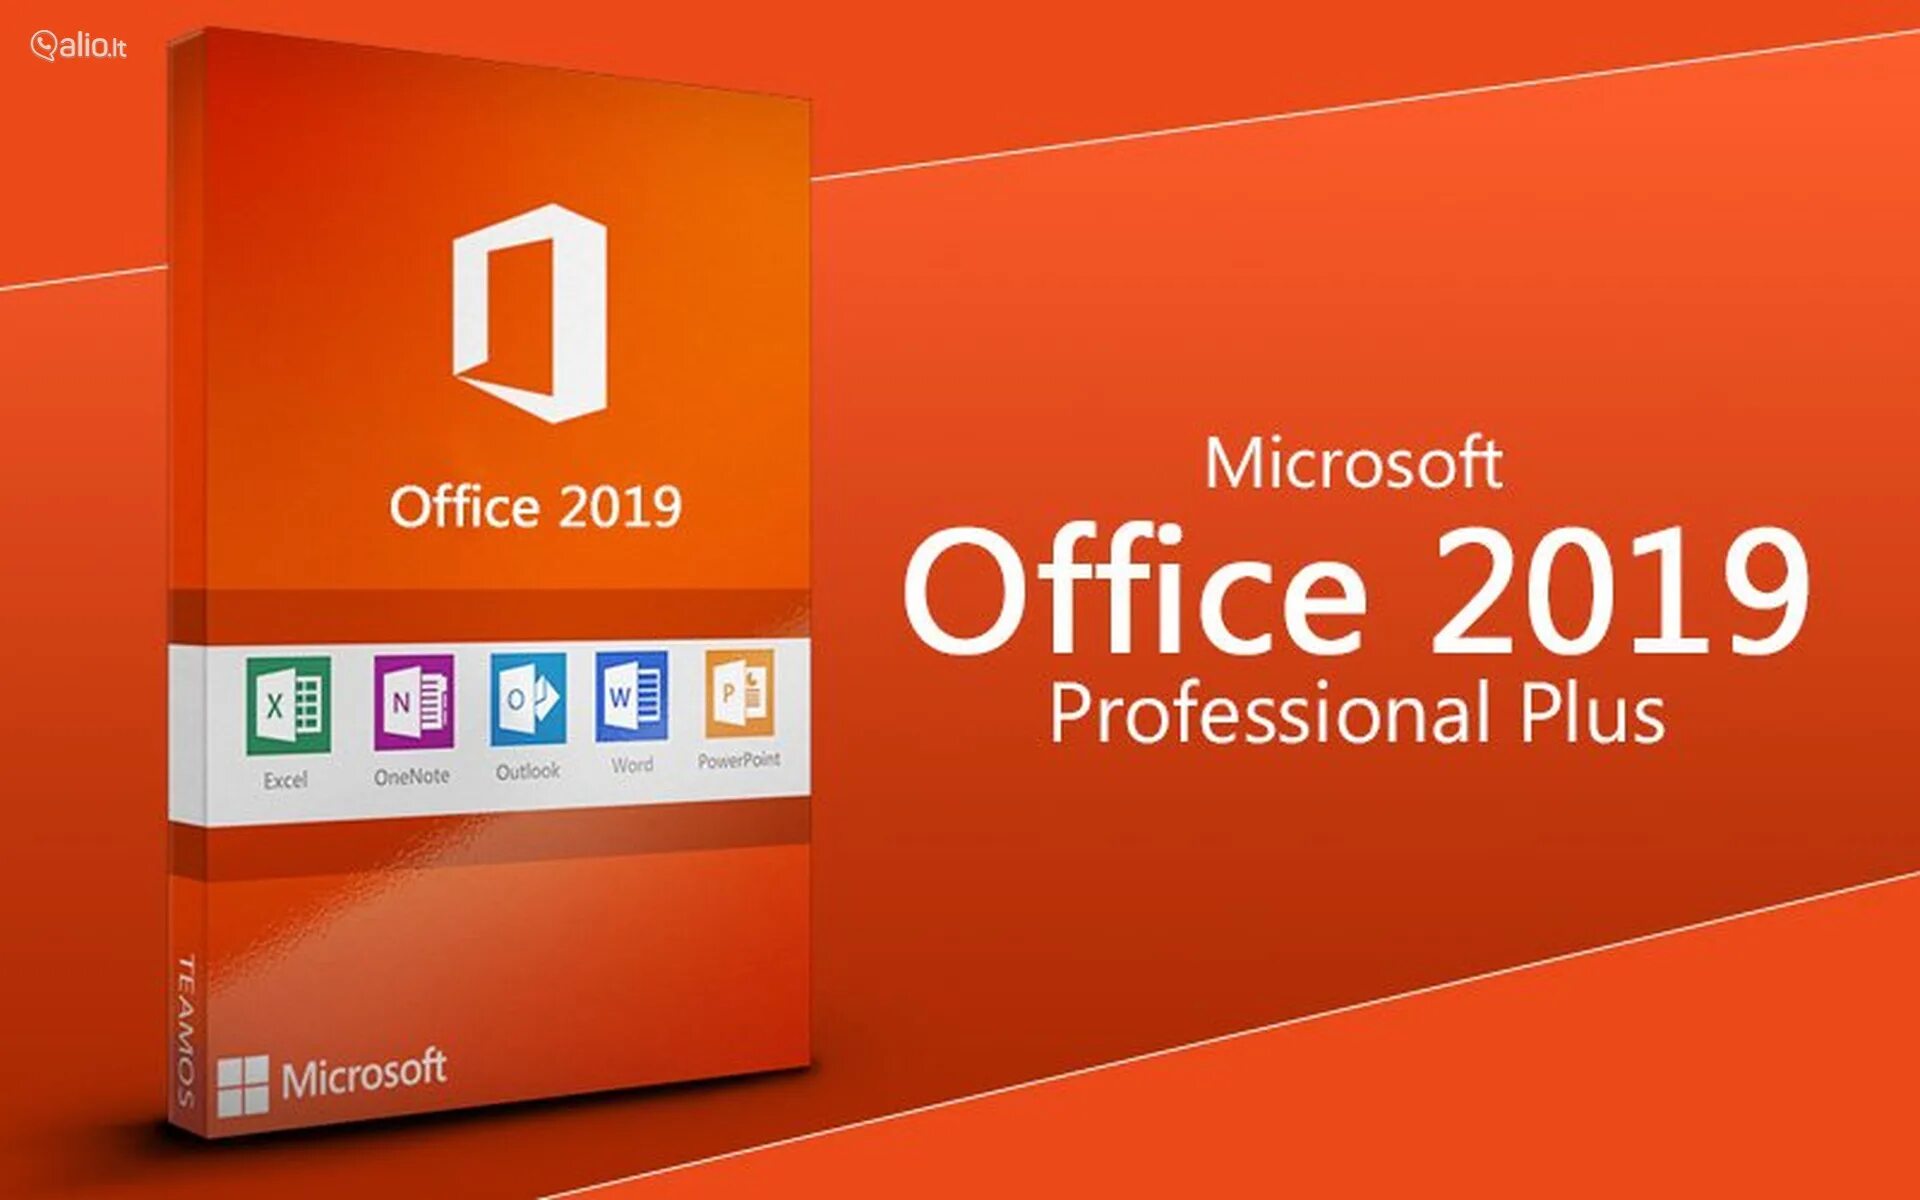 Microsoft Office 2019 professional Plus. Microsoft Office 2019 professional Plus Key. Ключ для Microsoft Office профессиональный плюс 2019. Office 2021 professional Plus.